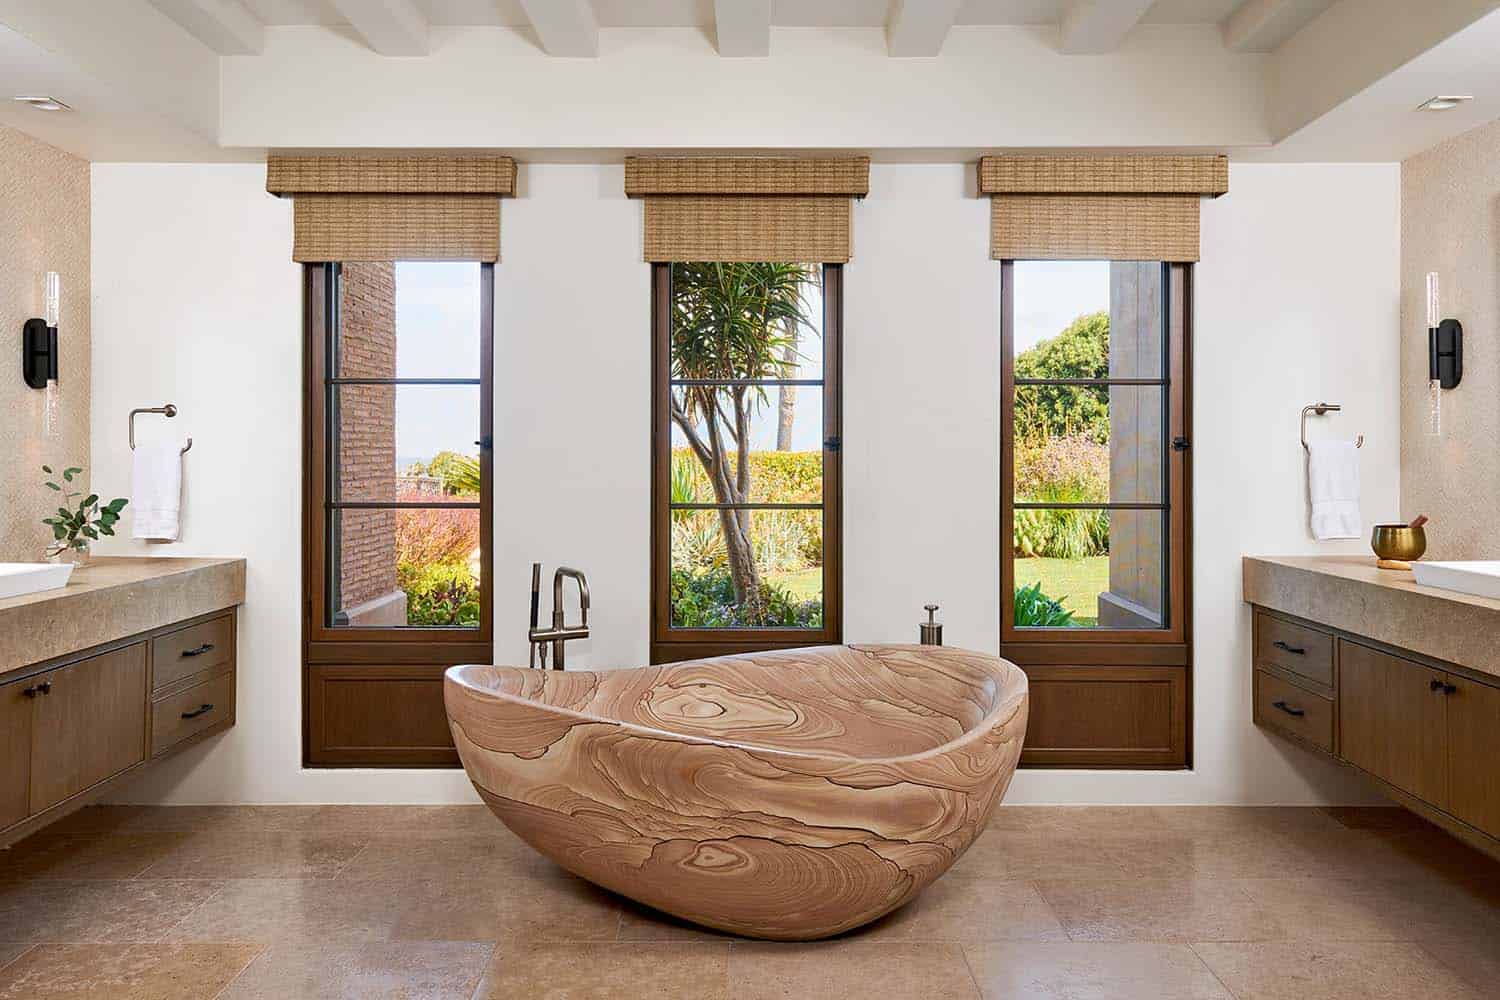 mediterranean style bathroom with a soaking tub